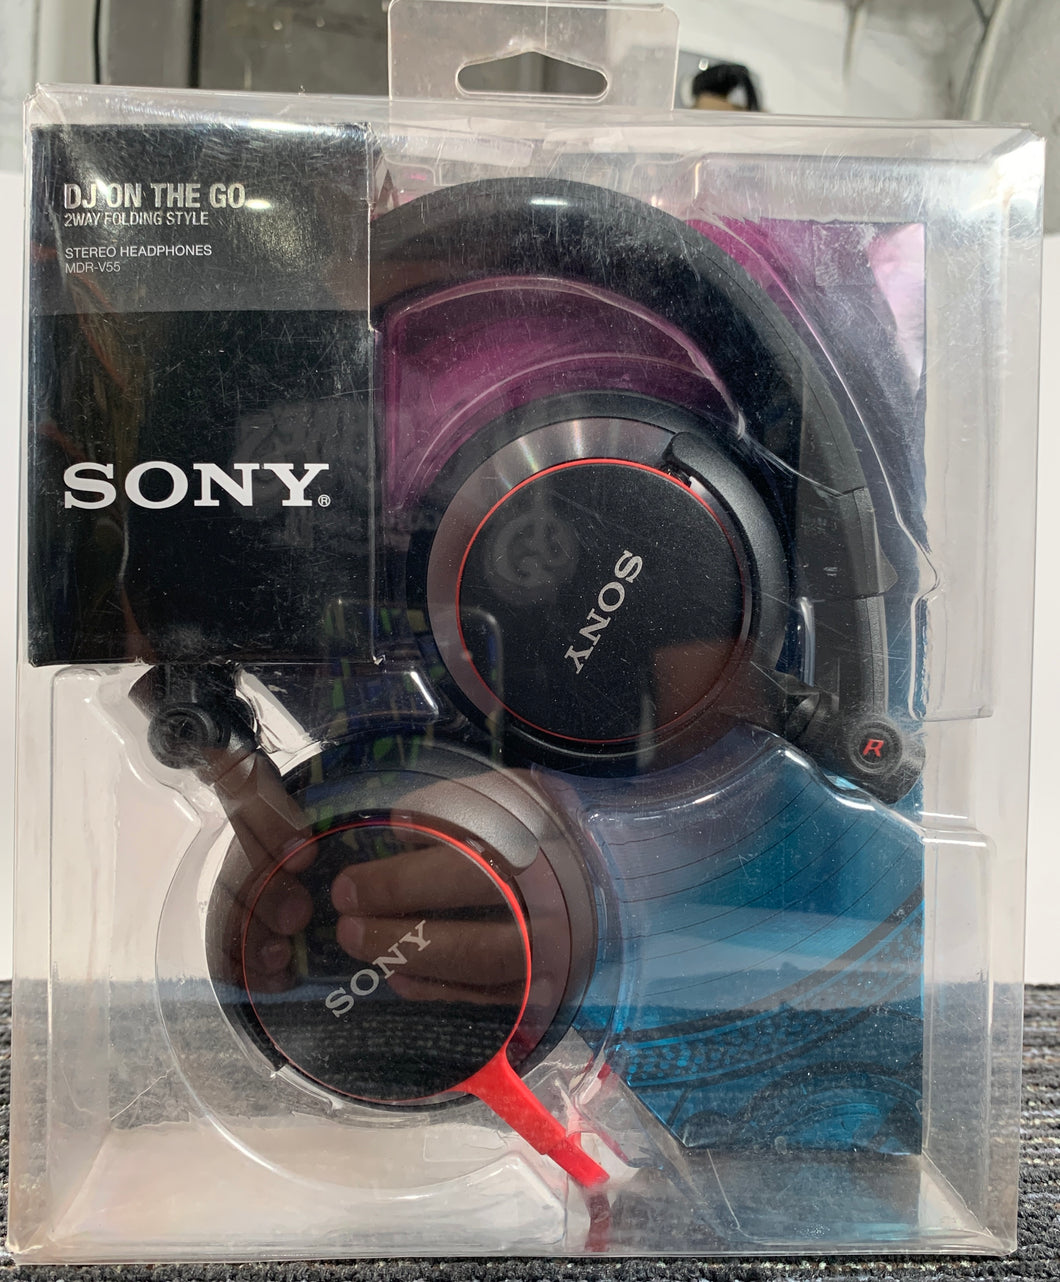 Sony MDR-V55 Stereo Headphones